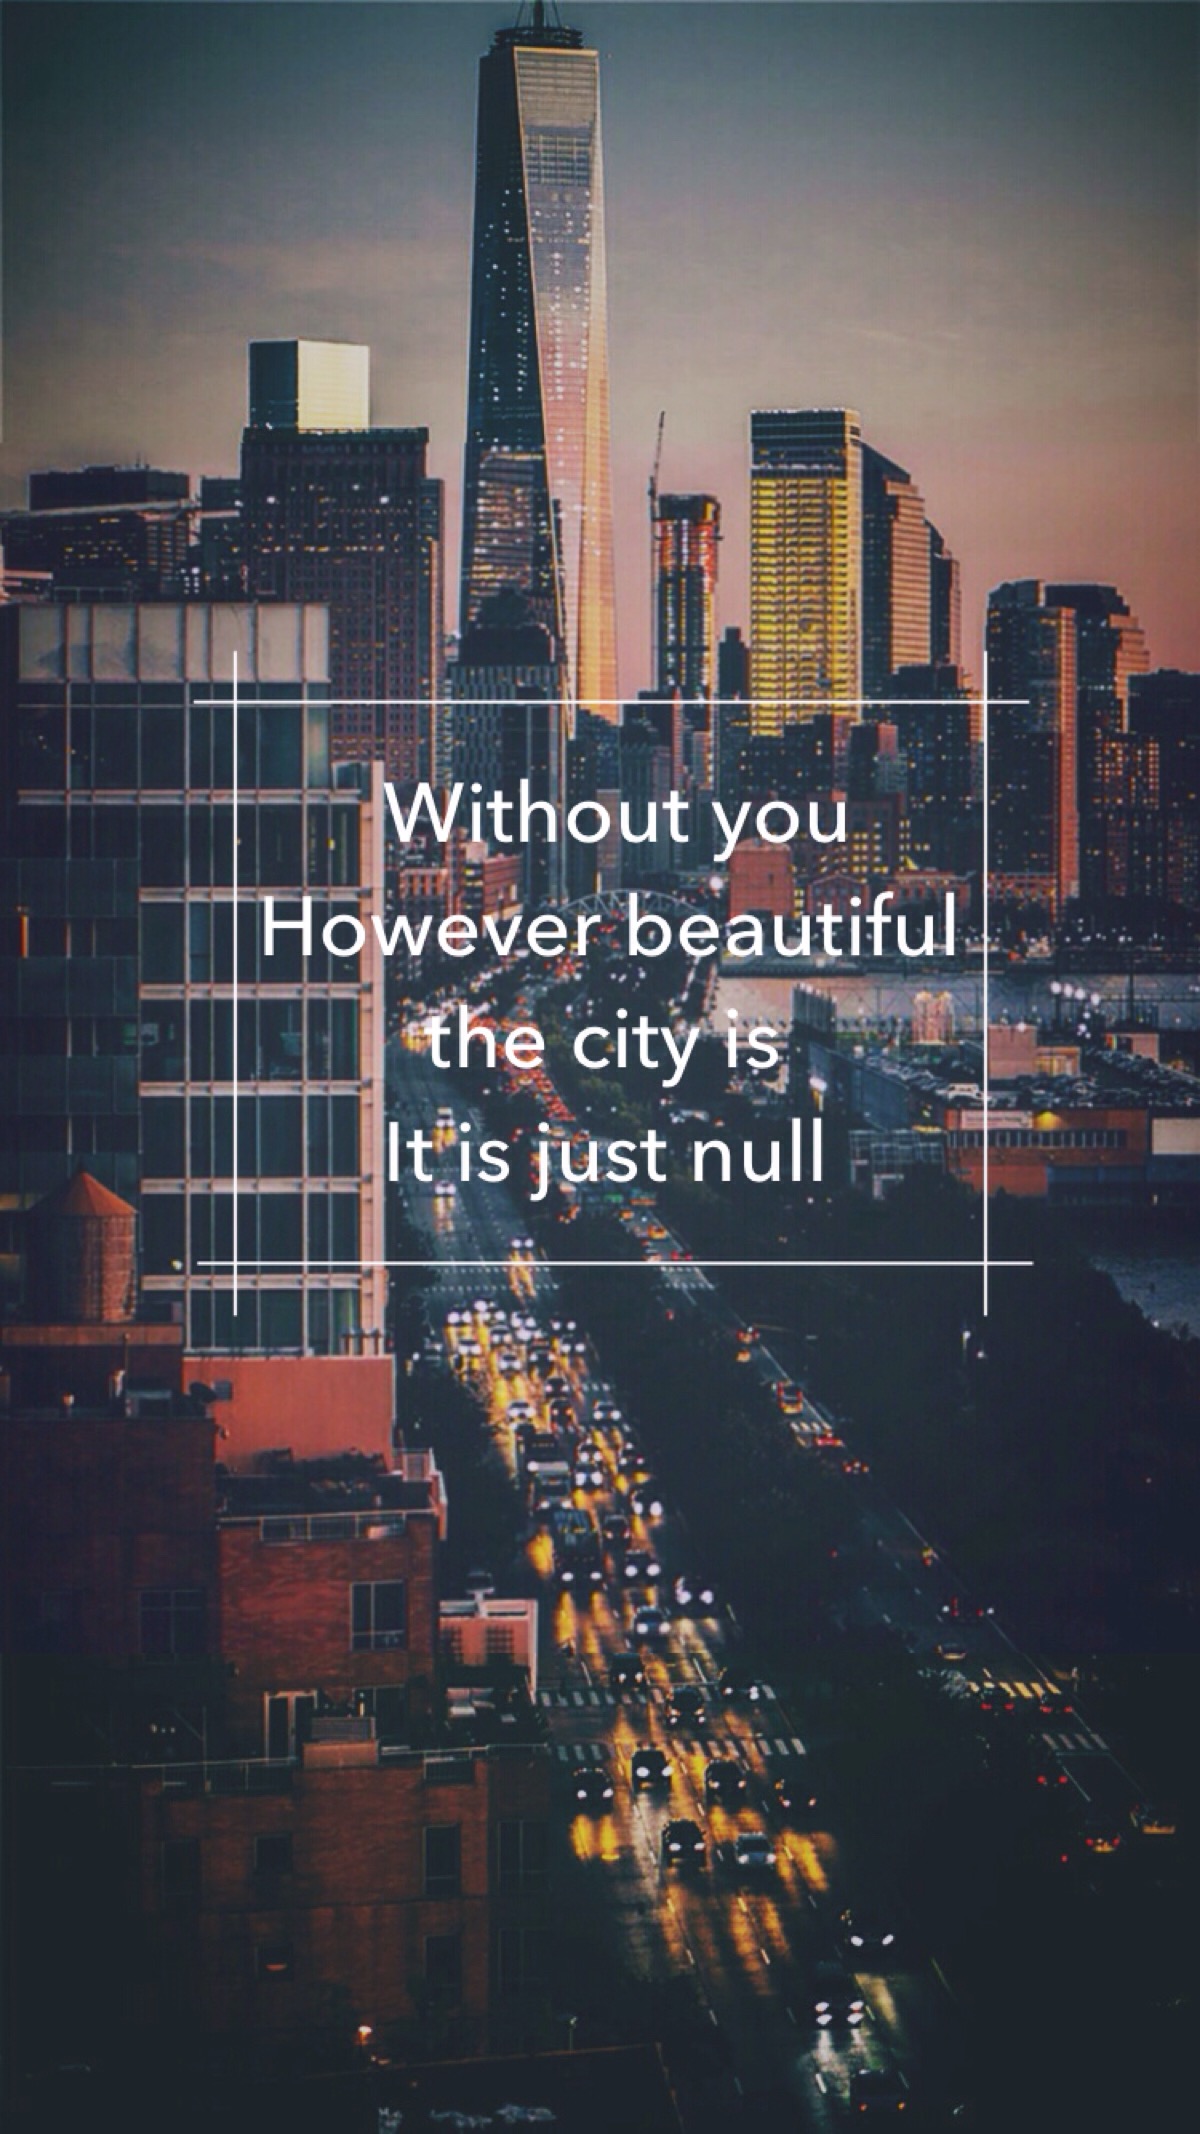 意为:没有了你,再怎么美丽的城市在我看来,都只是一座空城 